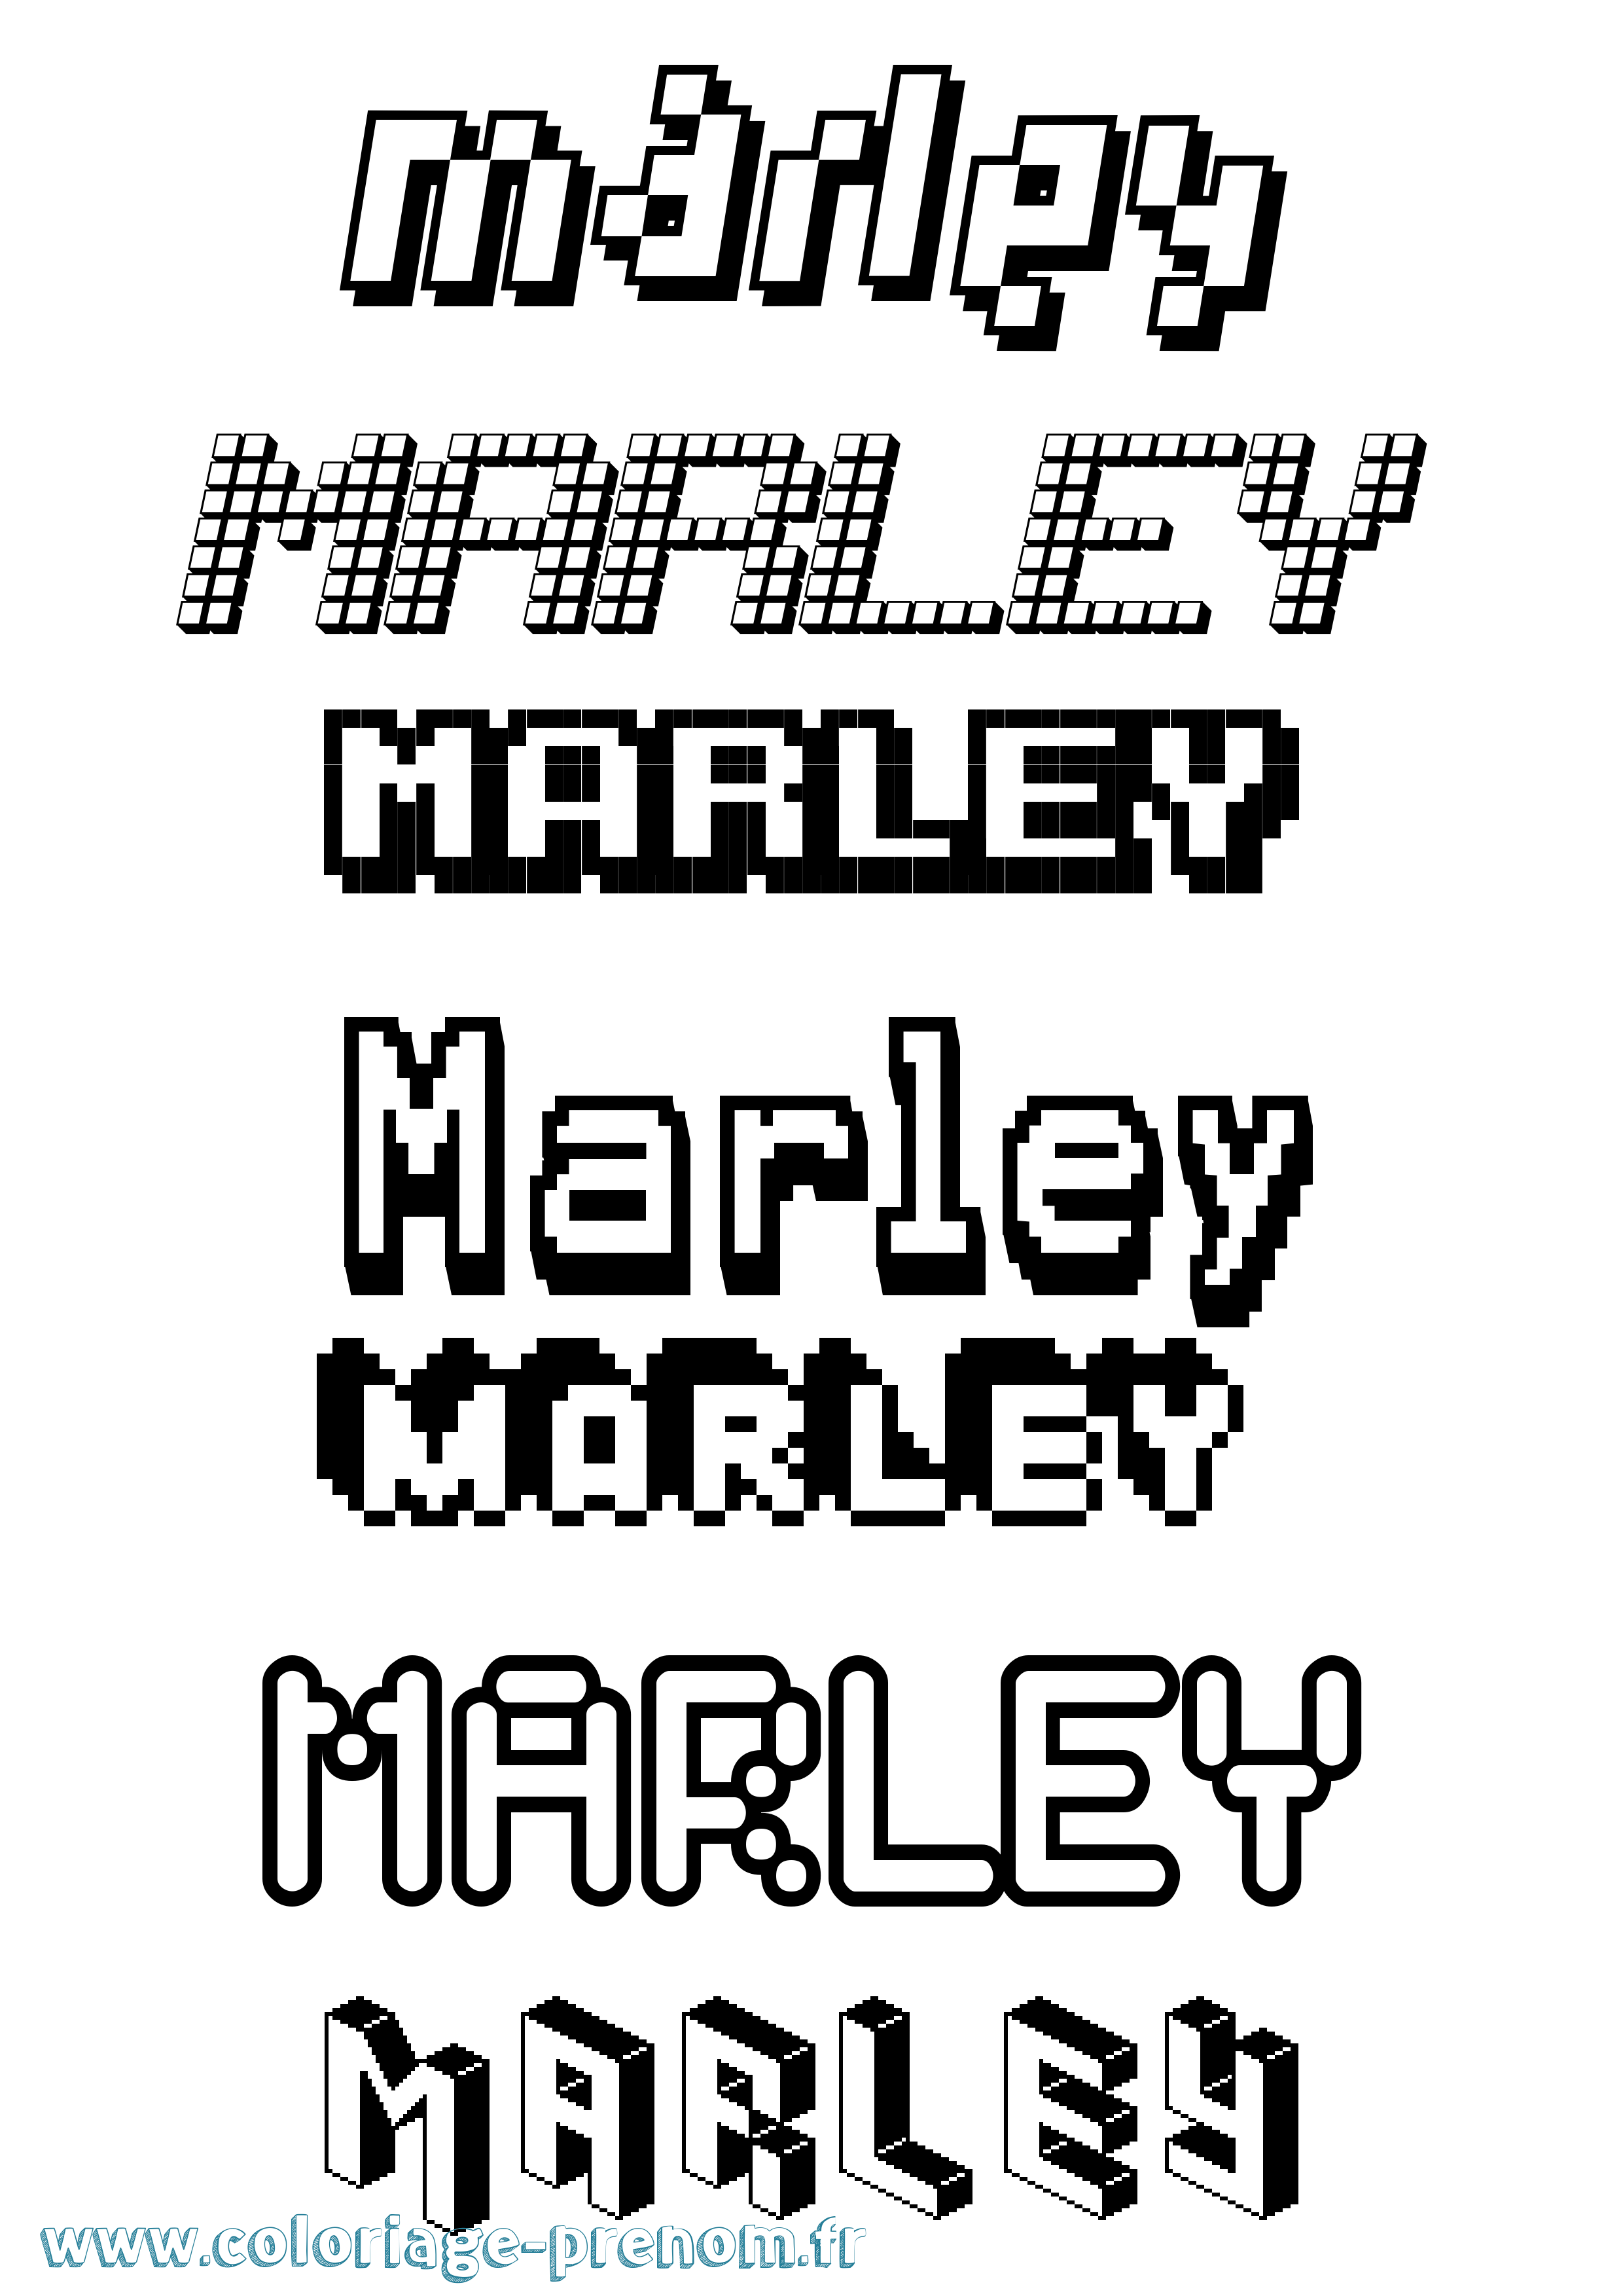 Coloriage prénom Marley Pixel